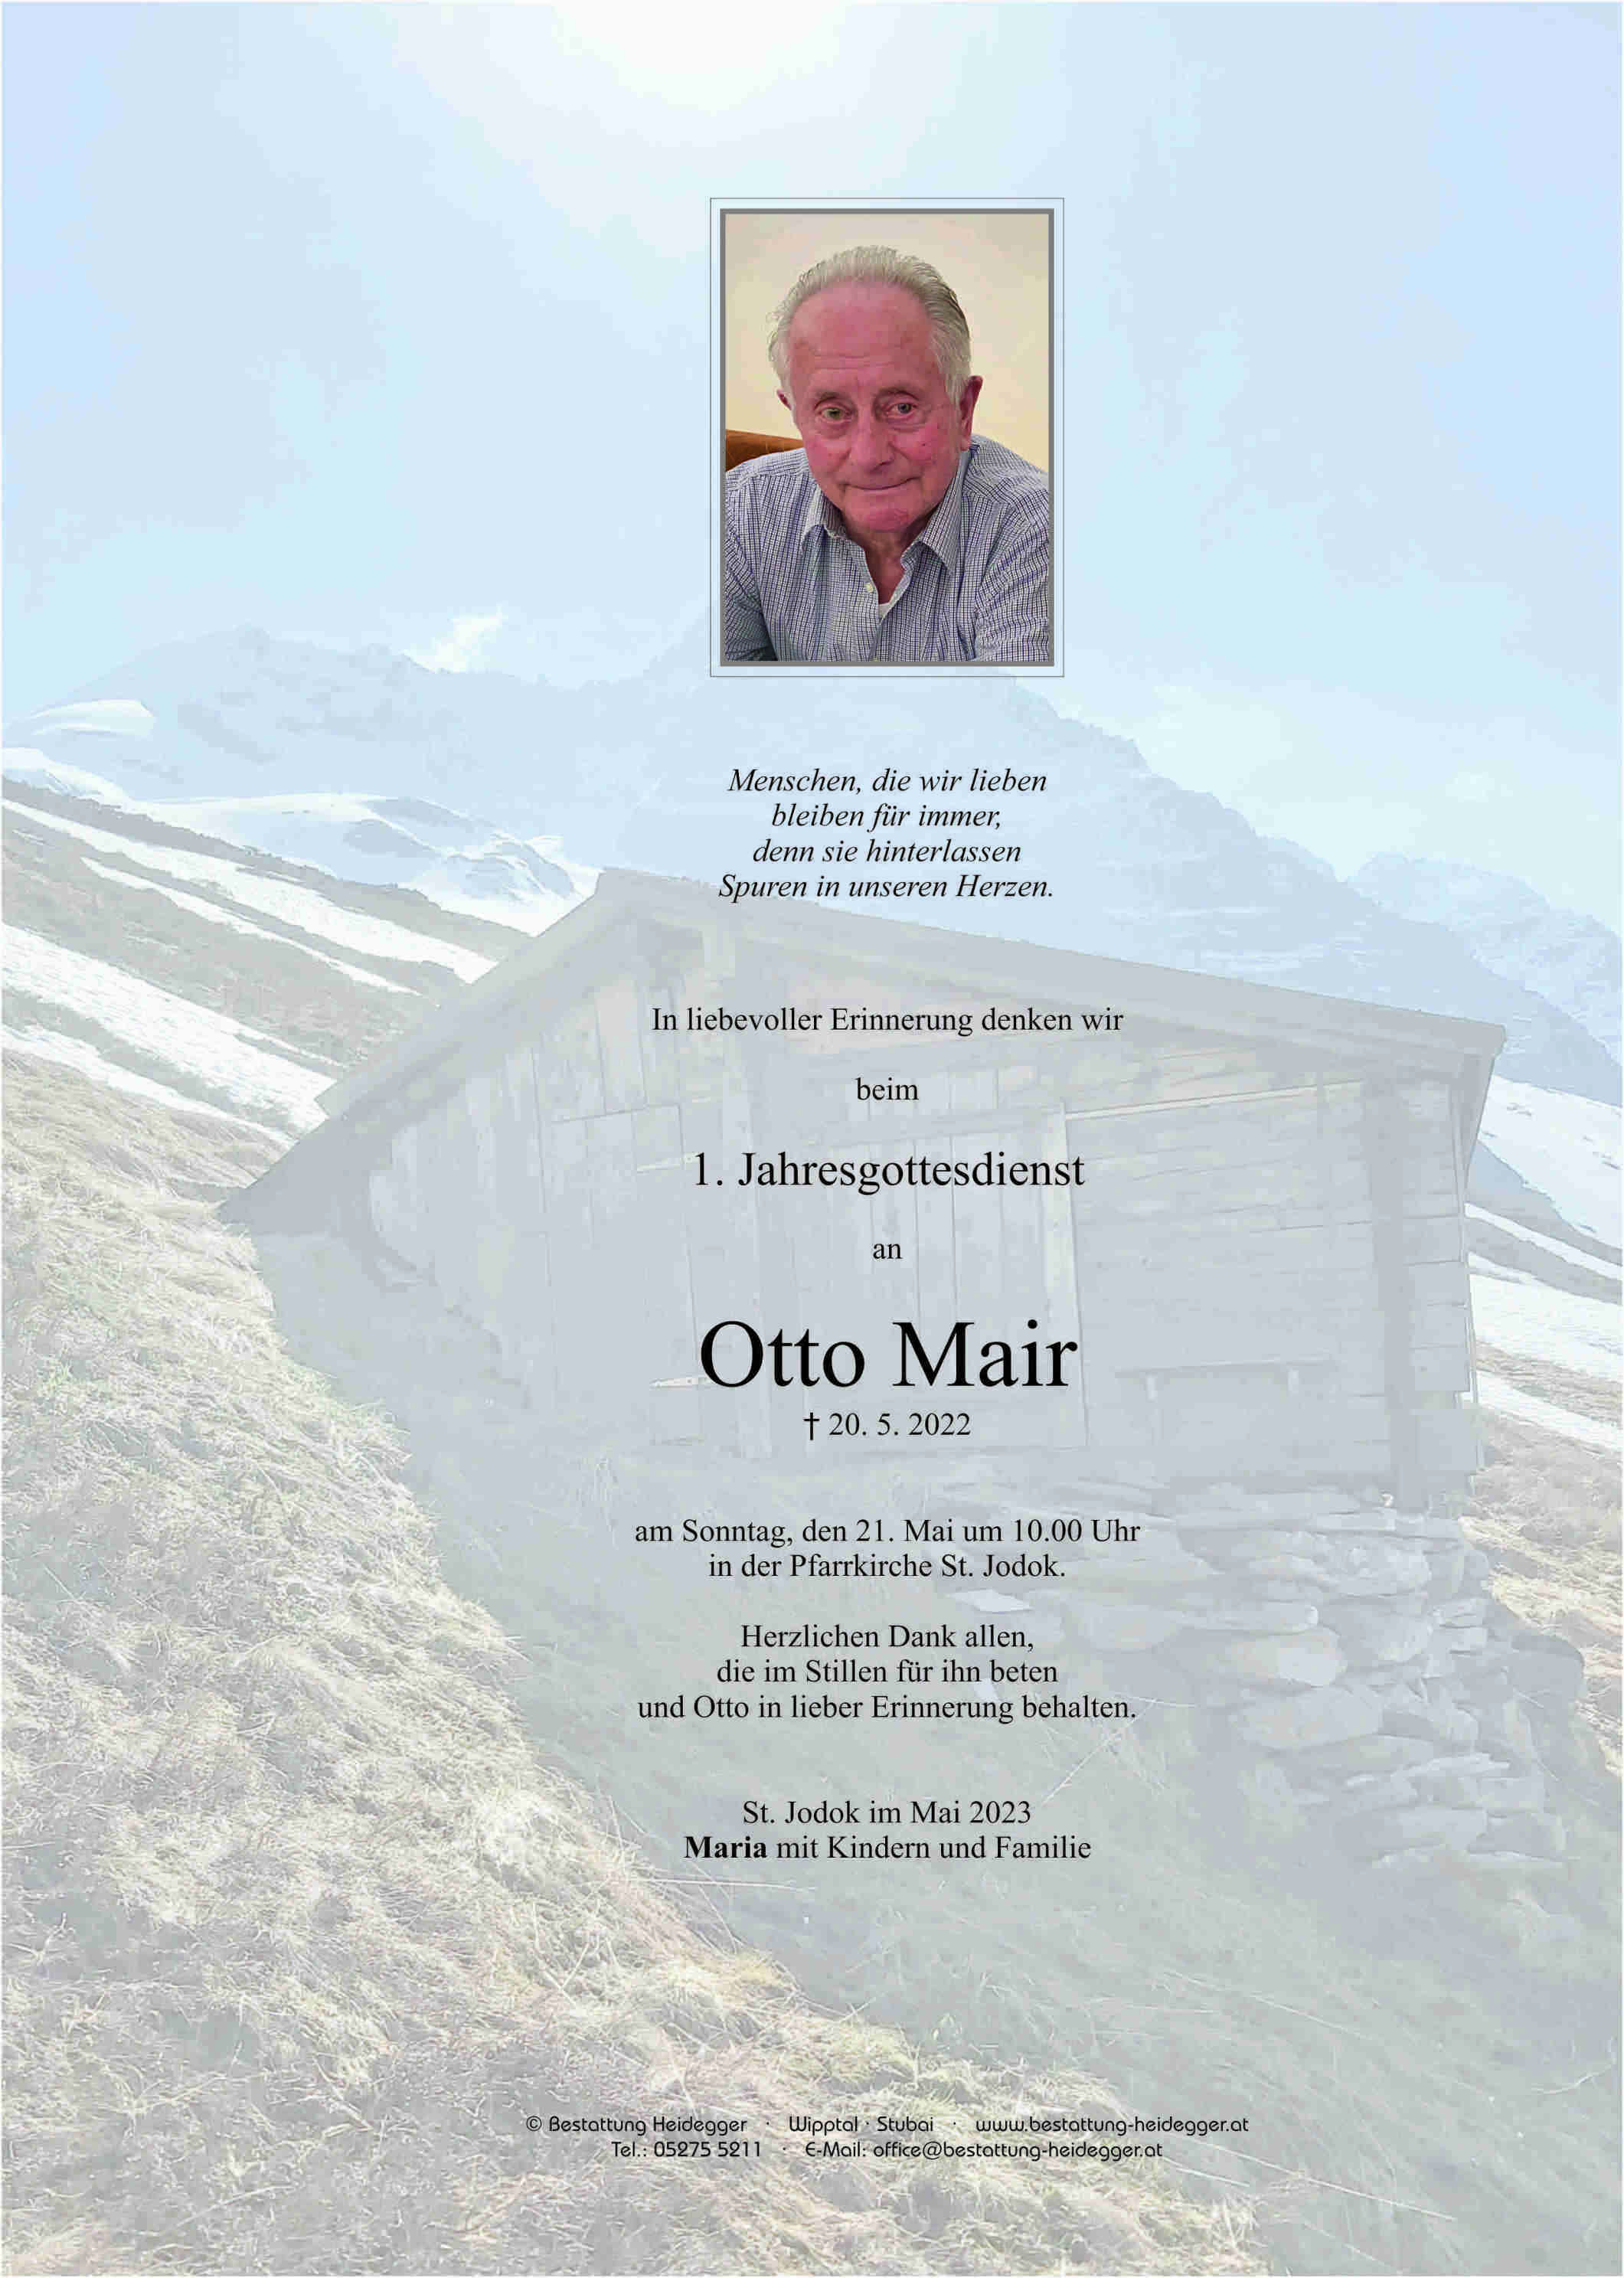 Otto Mair